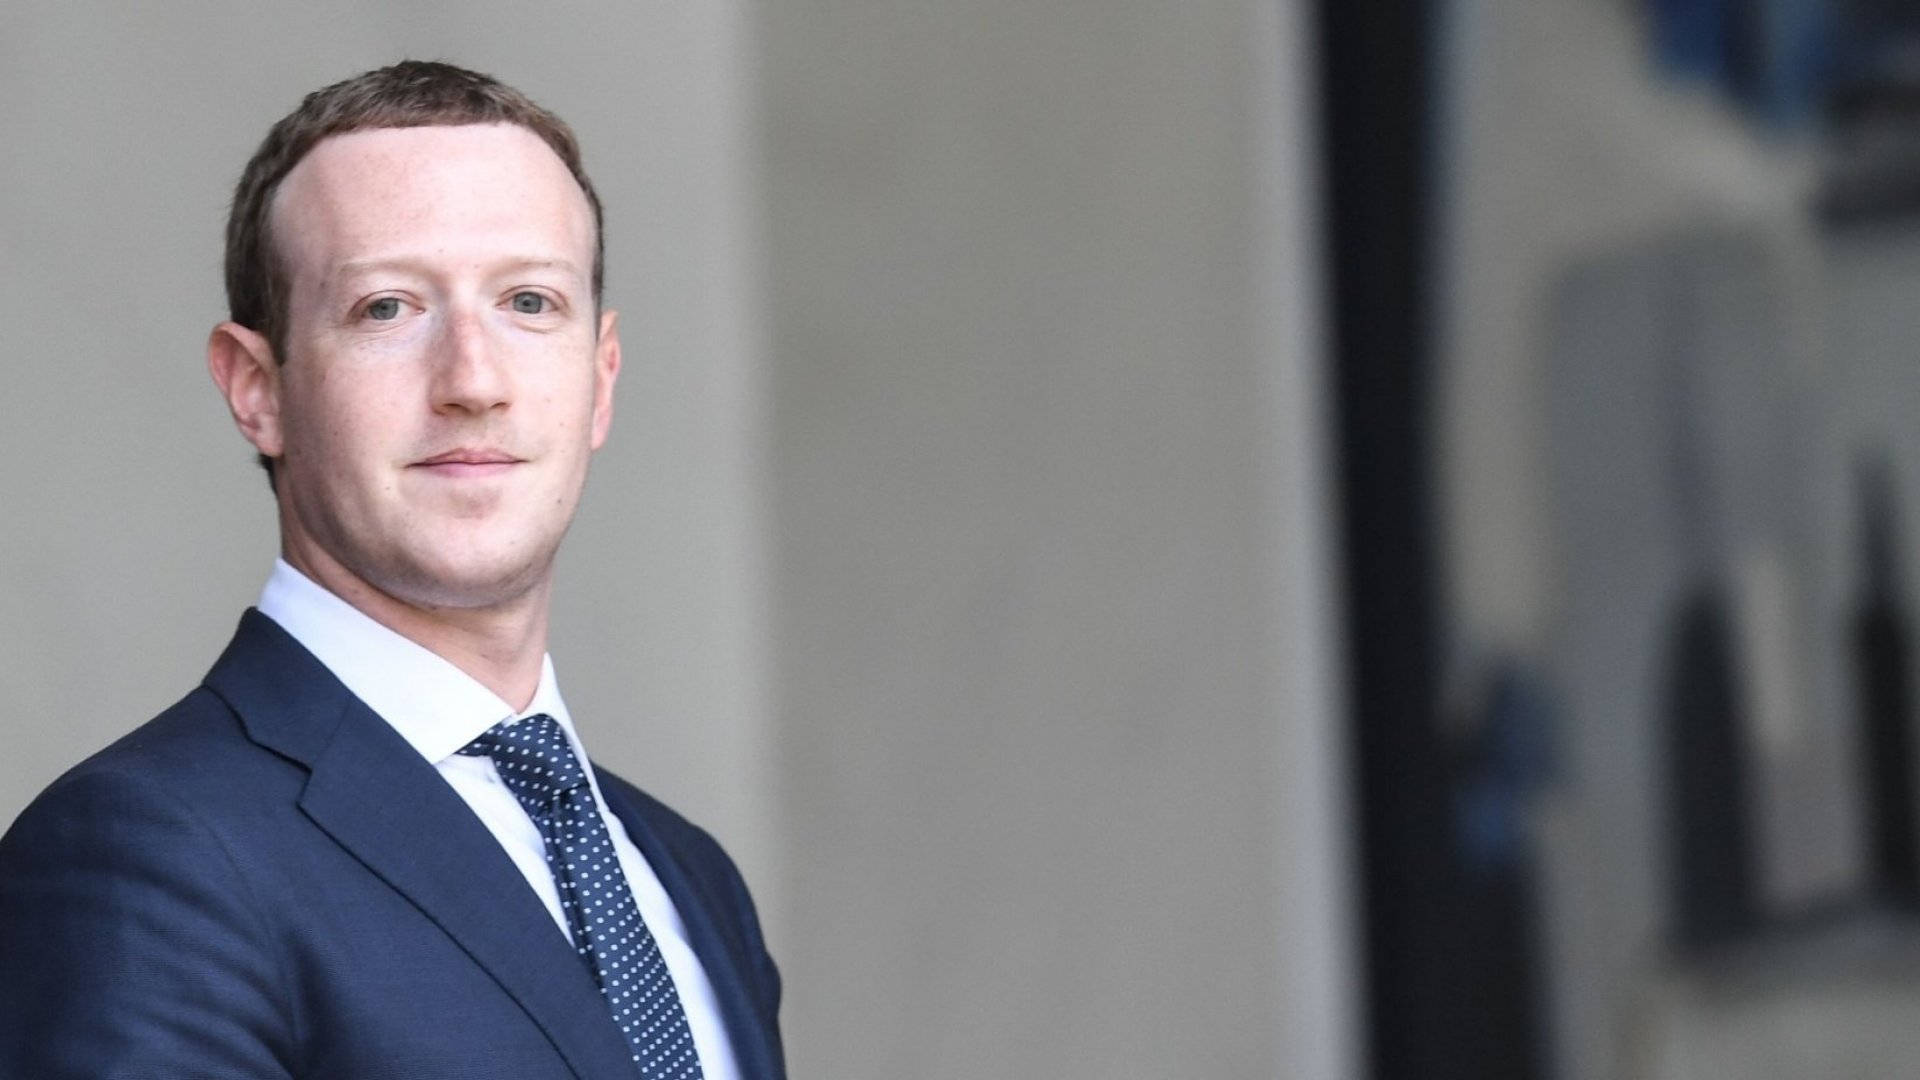 Mark Zuckerberg In Formal Suit